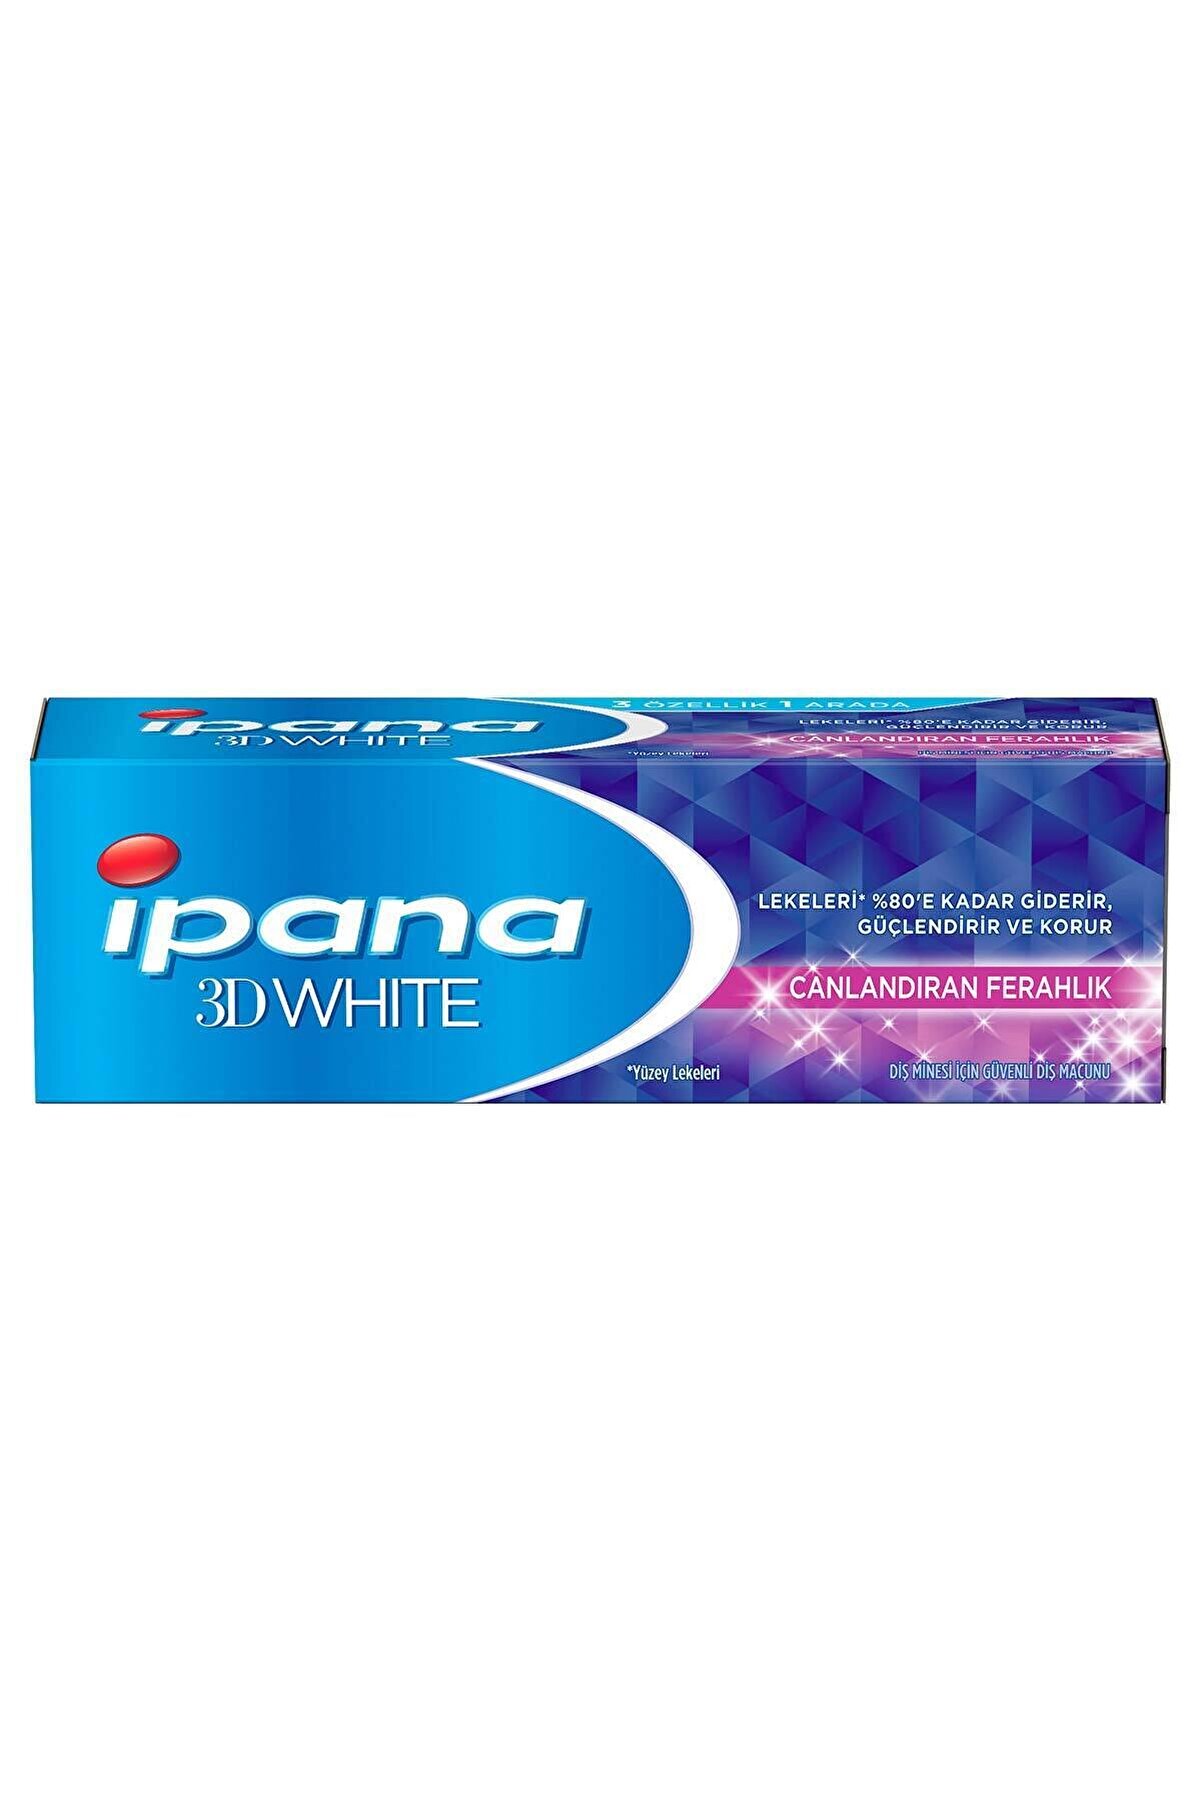 İpana Ipana 3 Boyutlu Beyazlık Diş Macunu Canlandıran Ferahlık 75